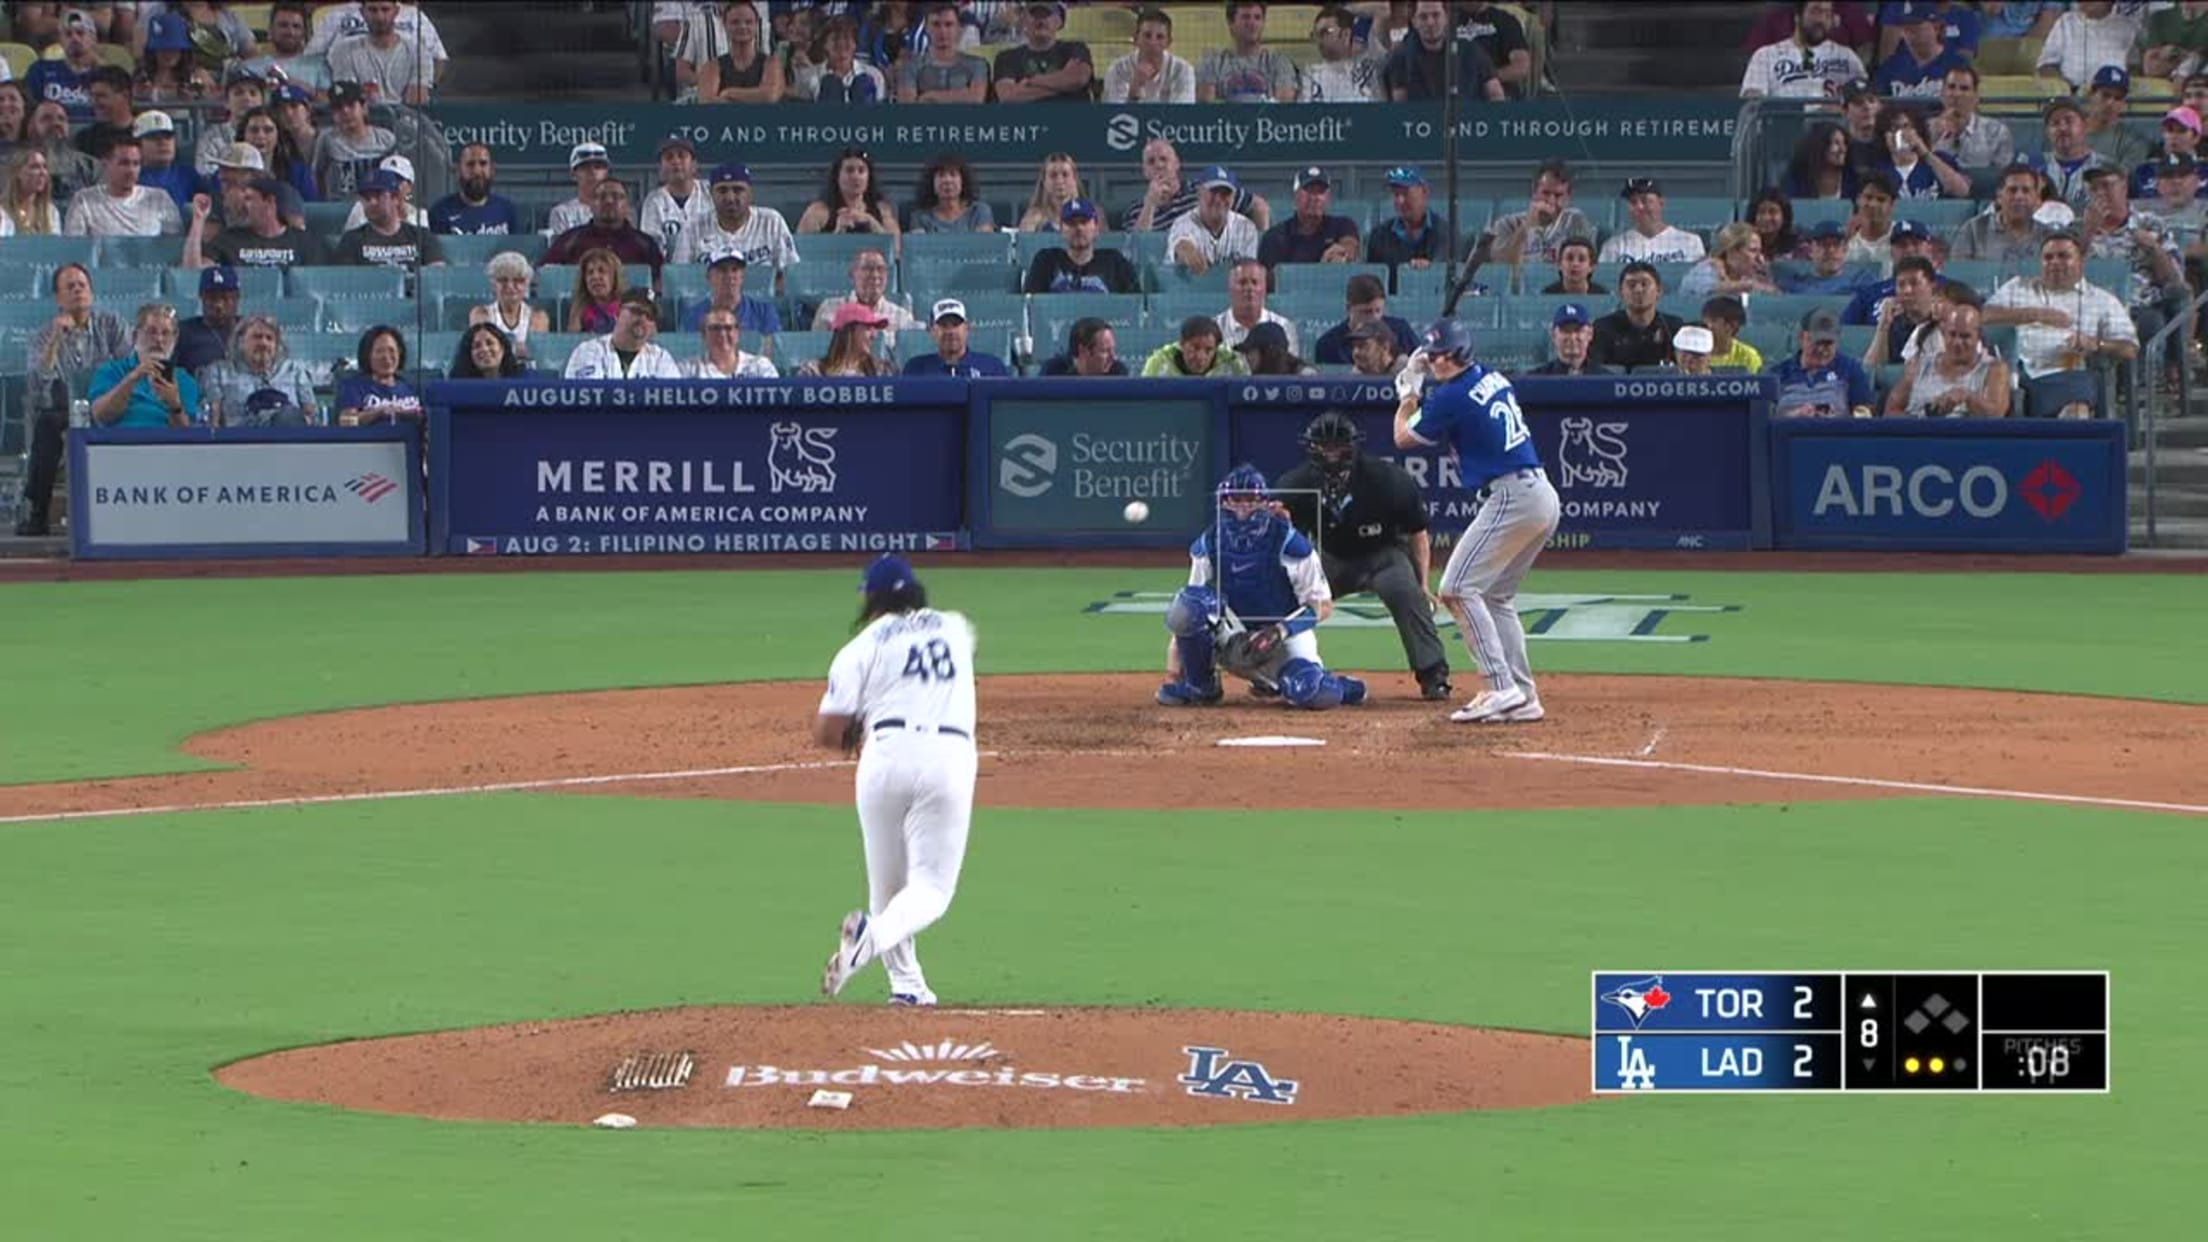 GF Baseball — Matt Chapman hits a 3-run home run - August 13